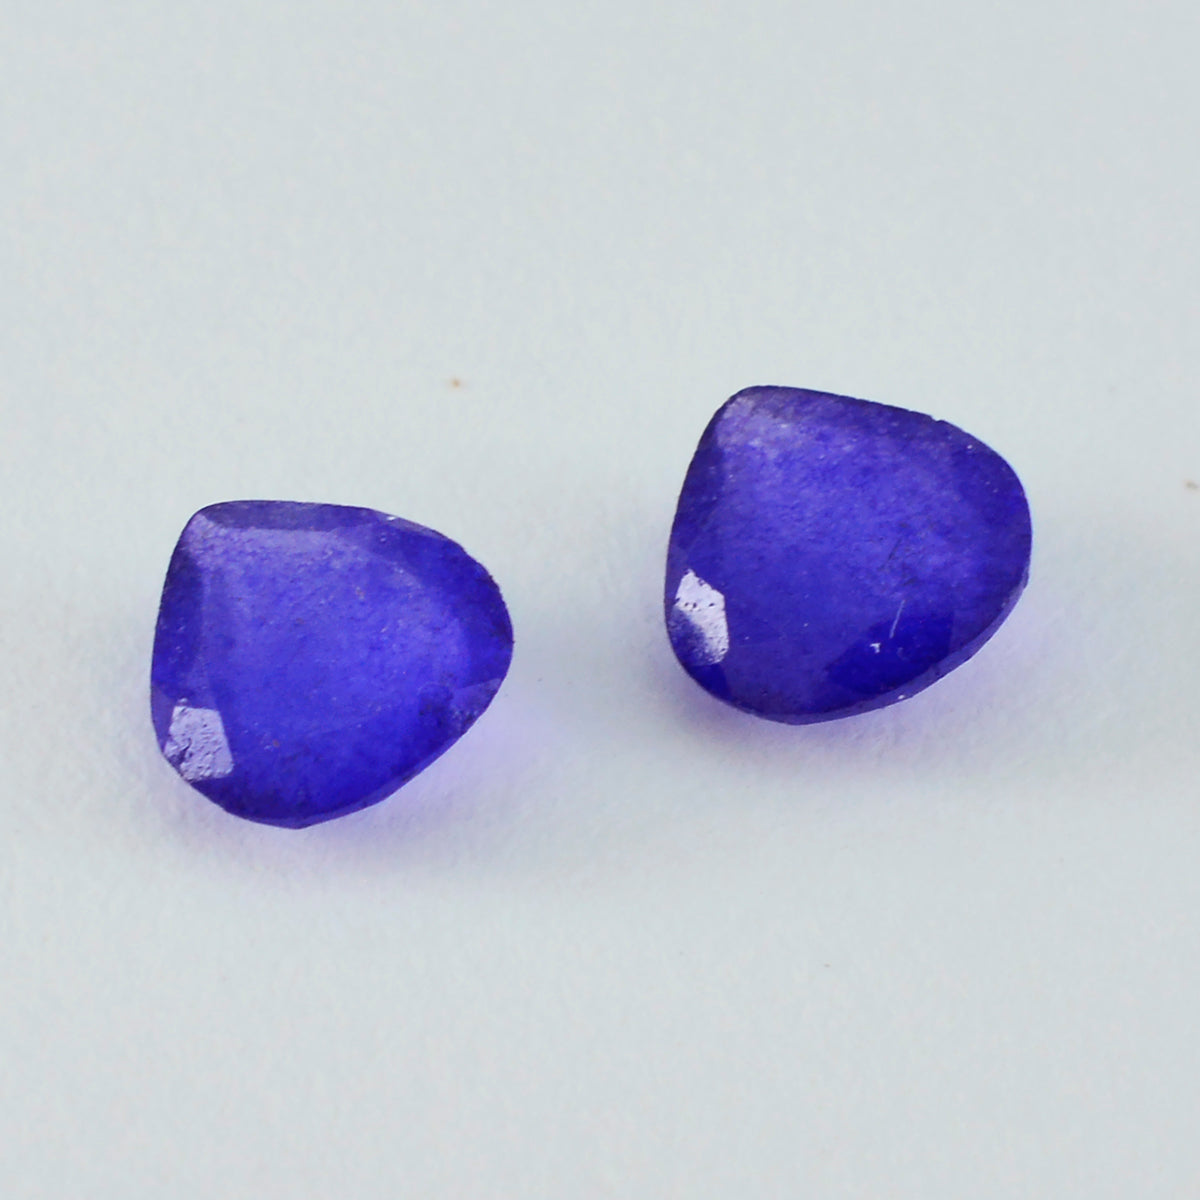 Riyogems 1 pieza jaspe azul auténtico facetado 14x14mm forma de corazón piedra suelta de calidad increíble